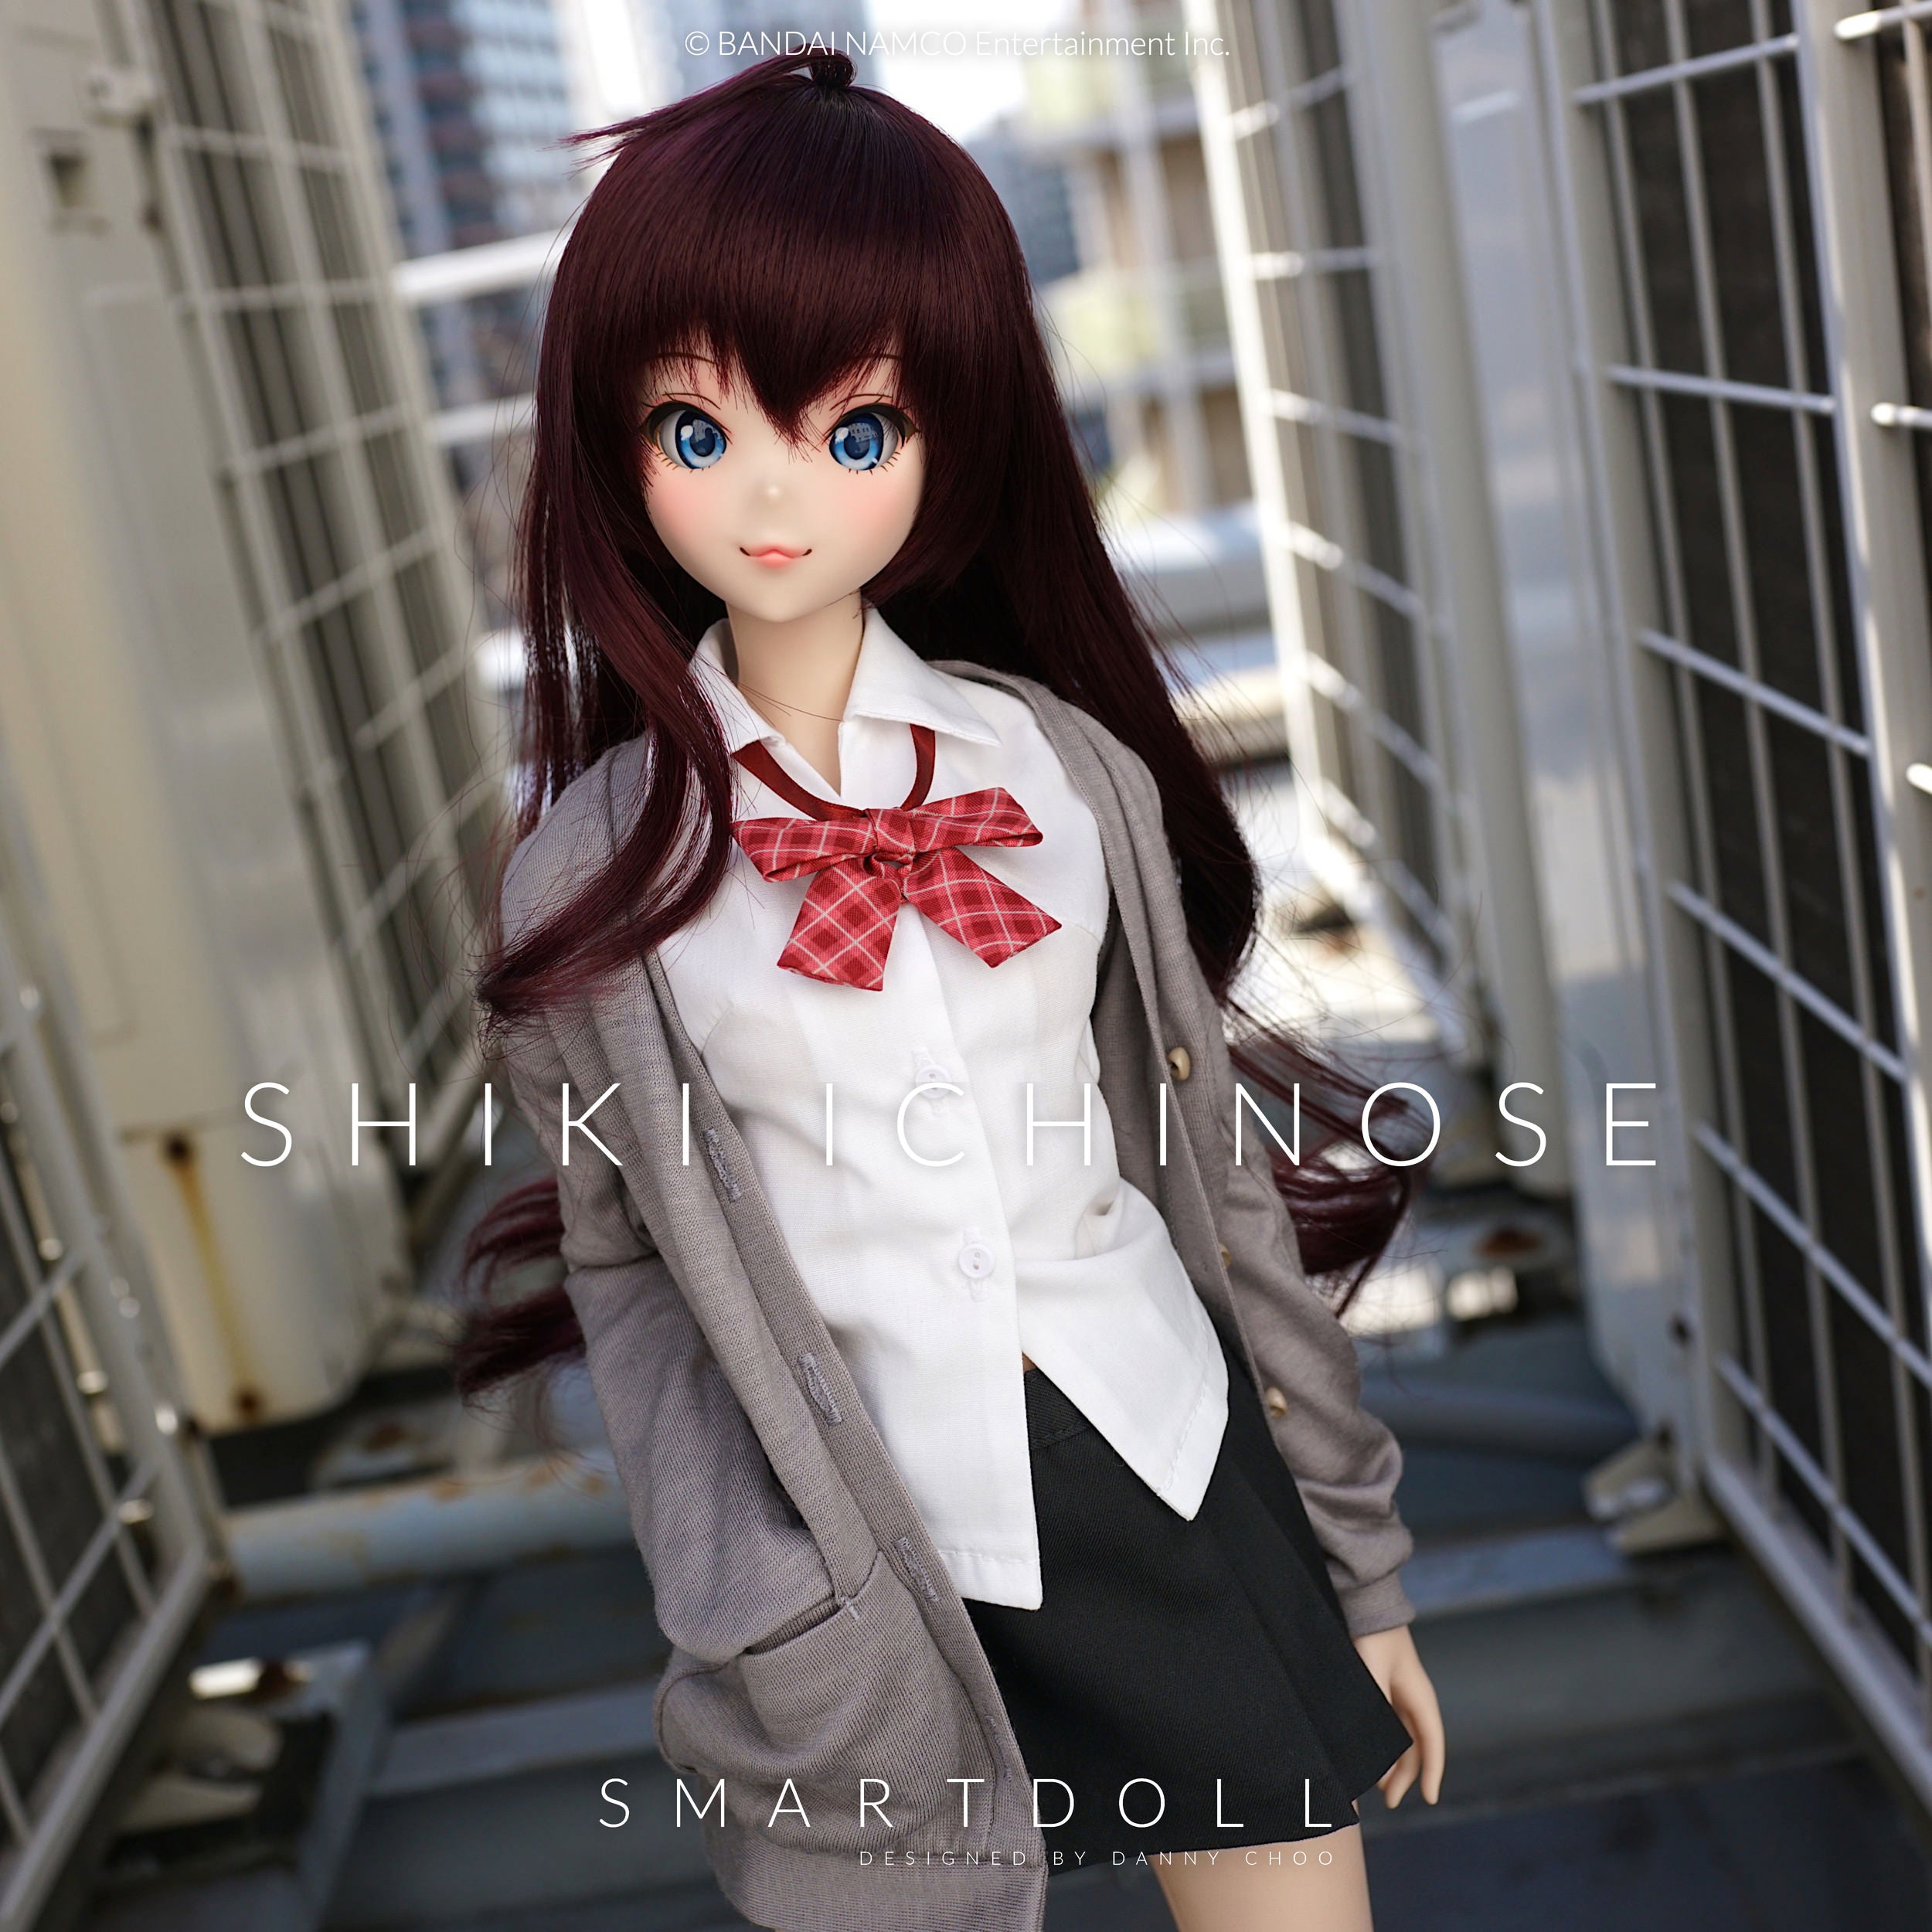 Smart Doll - Shiki Ichinose – Smart Doll Store